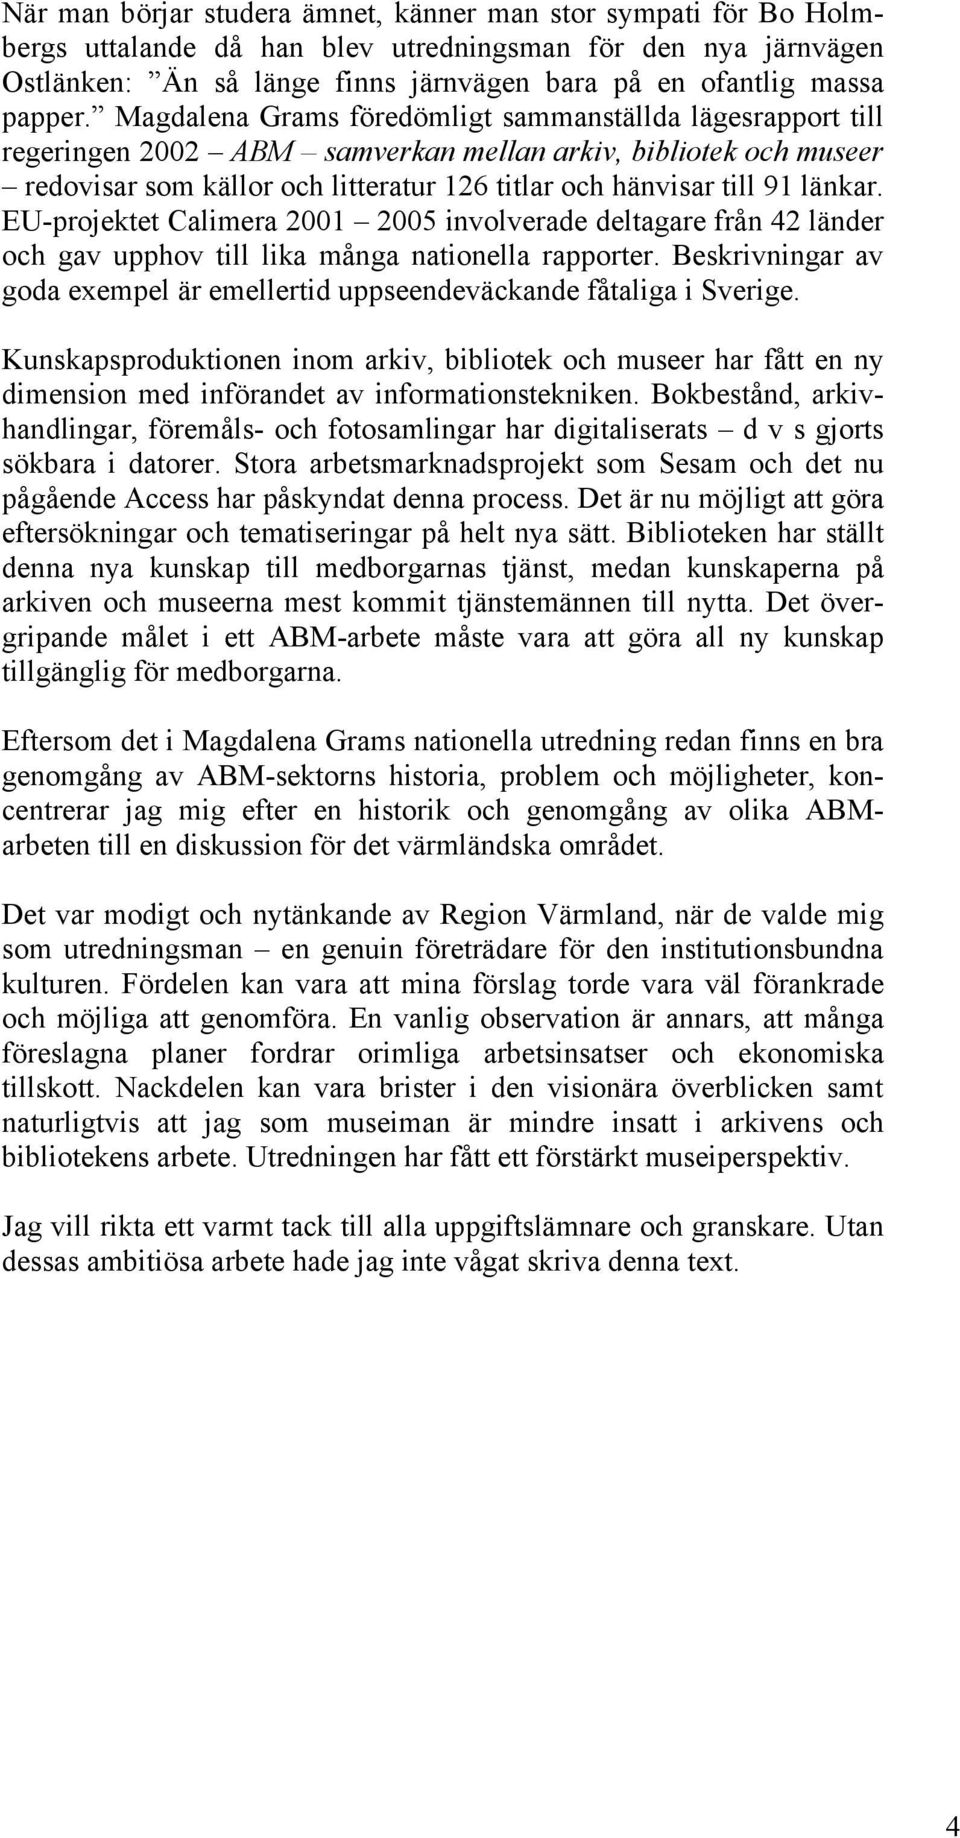 Magdalena Grams föredömligt sammanställda lägesrapport till regeringen 2002 ABM samverkan mellan arkiv, bibliotek och museer redovisar som källor och litteratur 126 titlar och hänvisar till 91 länkar.